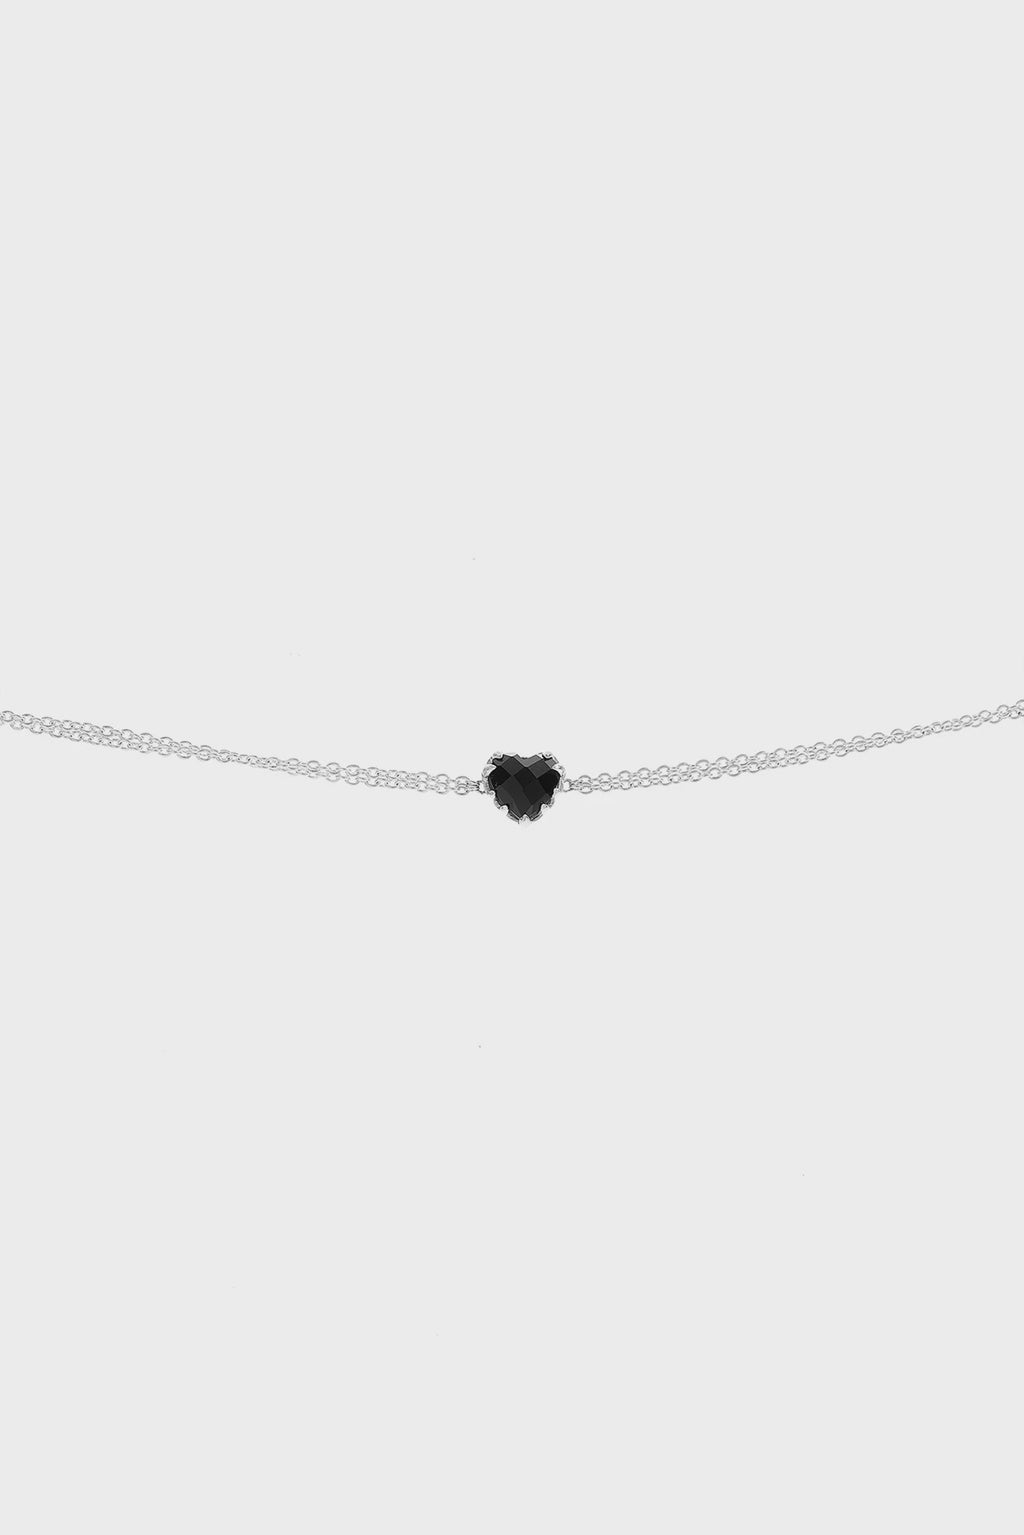 Love Claw Bracelet - Onyx